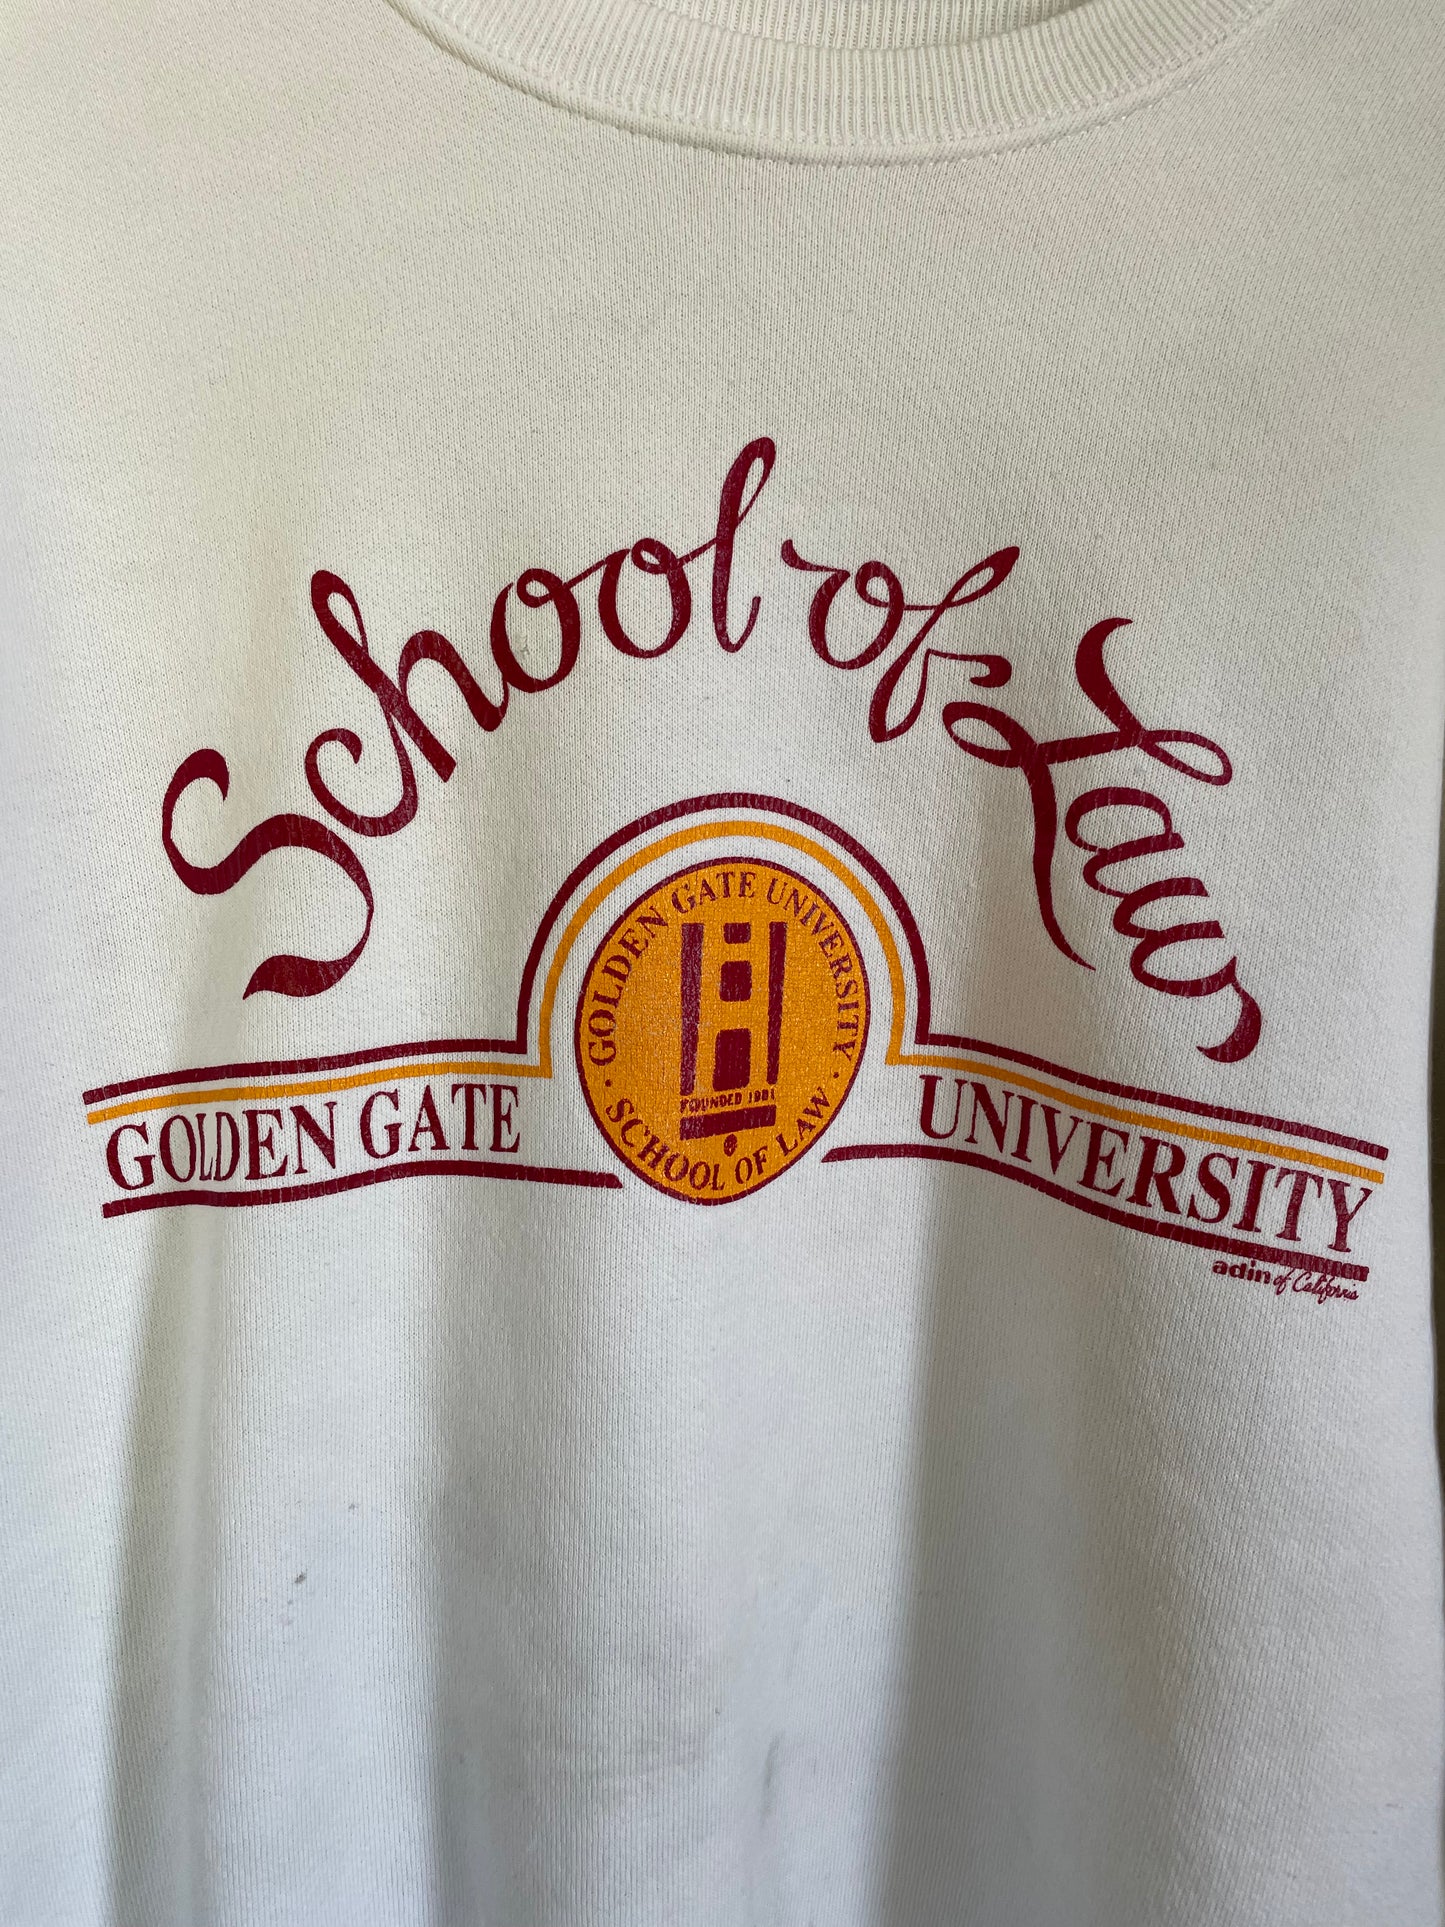 90s School Of Law, Golden Gate University Sweatshirt